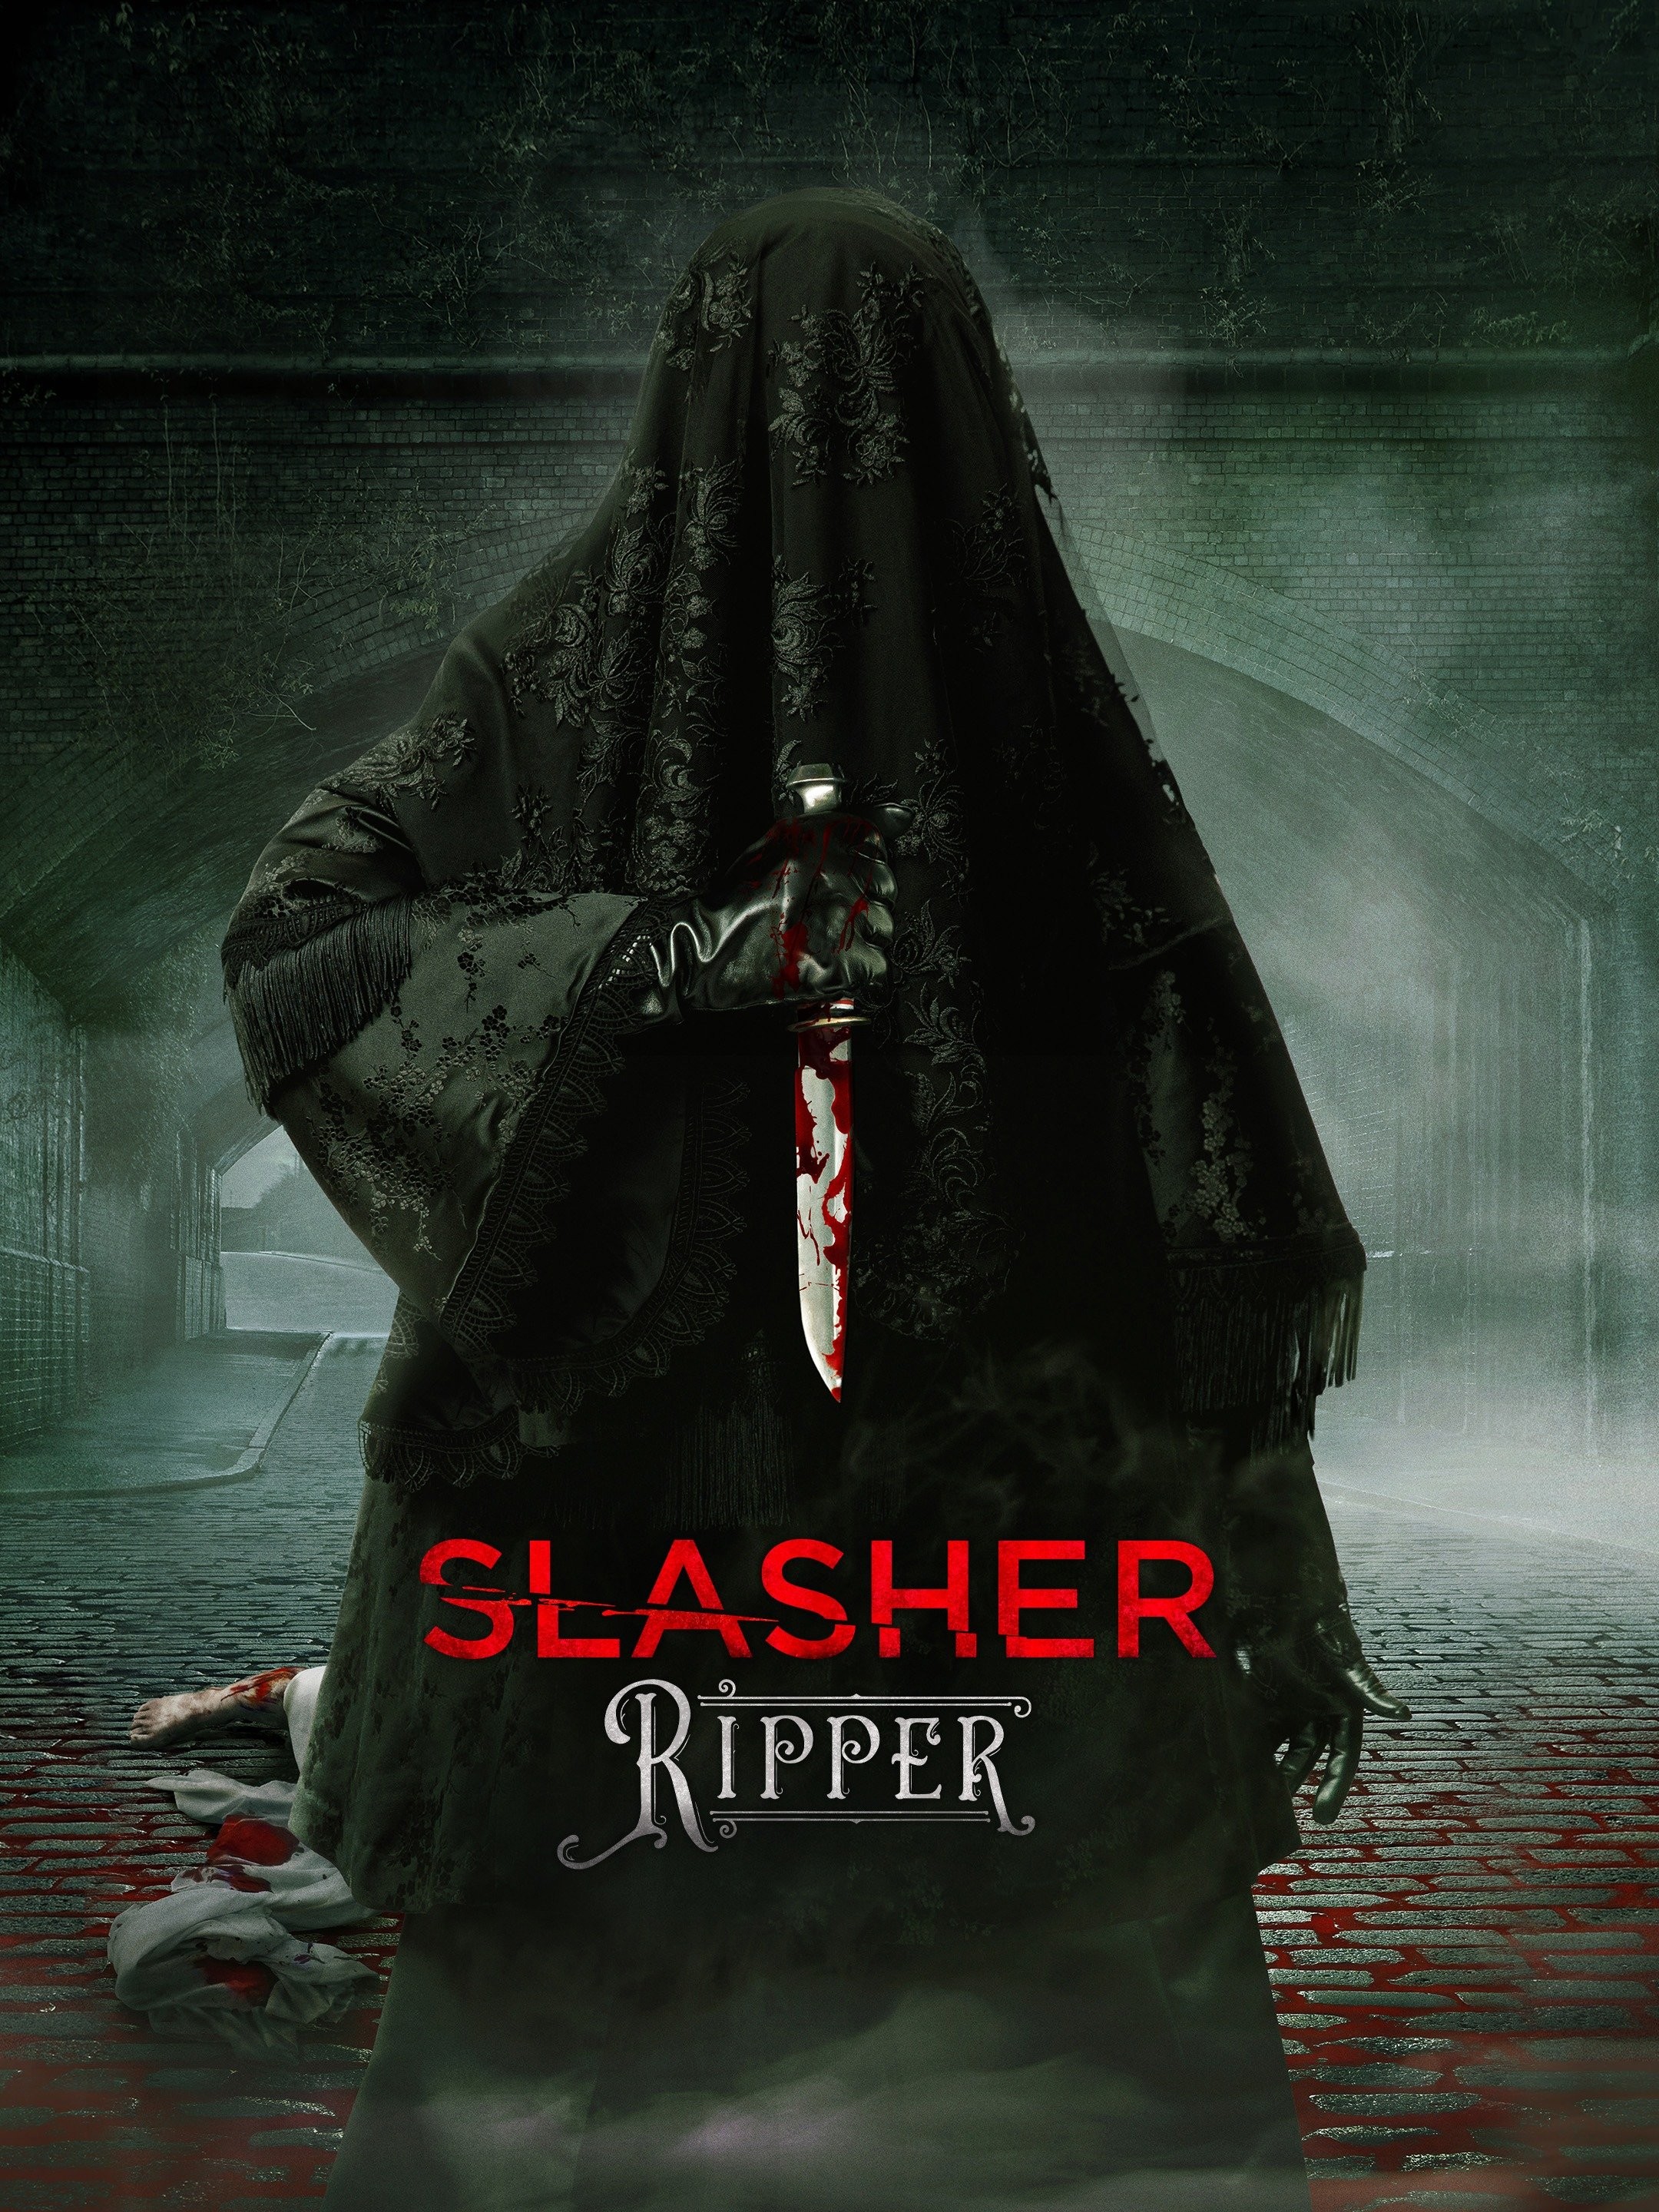 Slasher: Ripper - Shudder's Slasher Series Will Return for Season 5 -  Bloody Disgusting